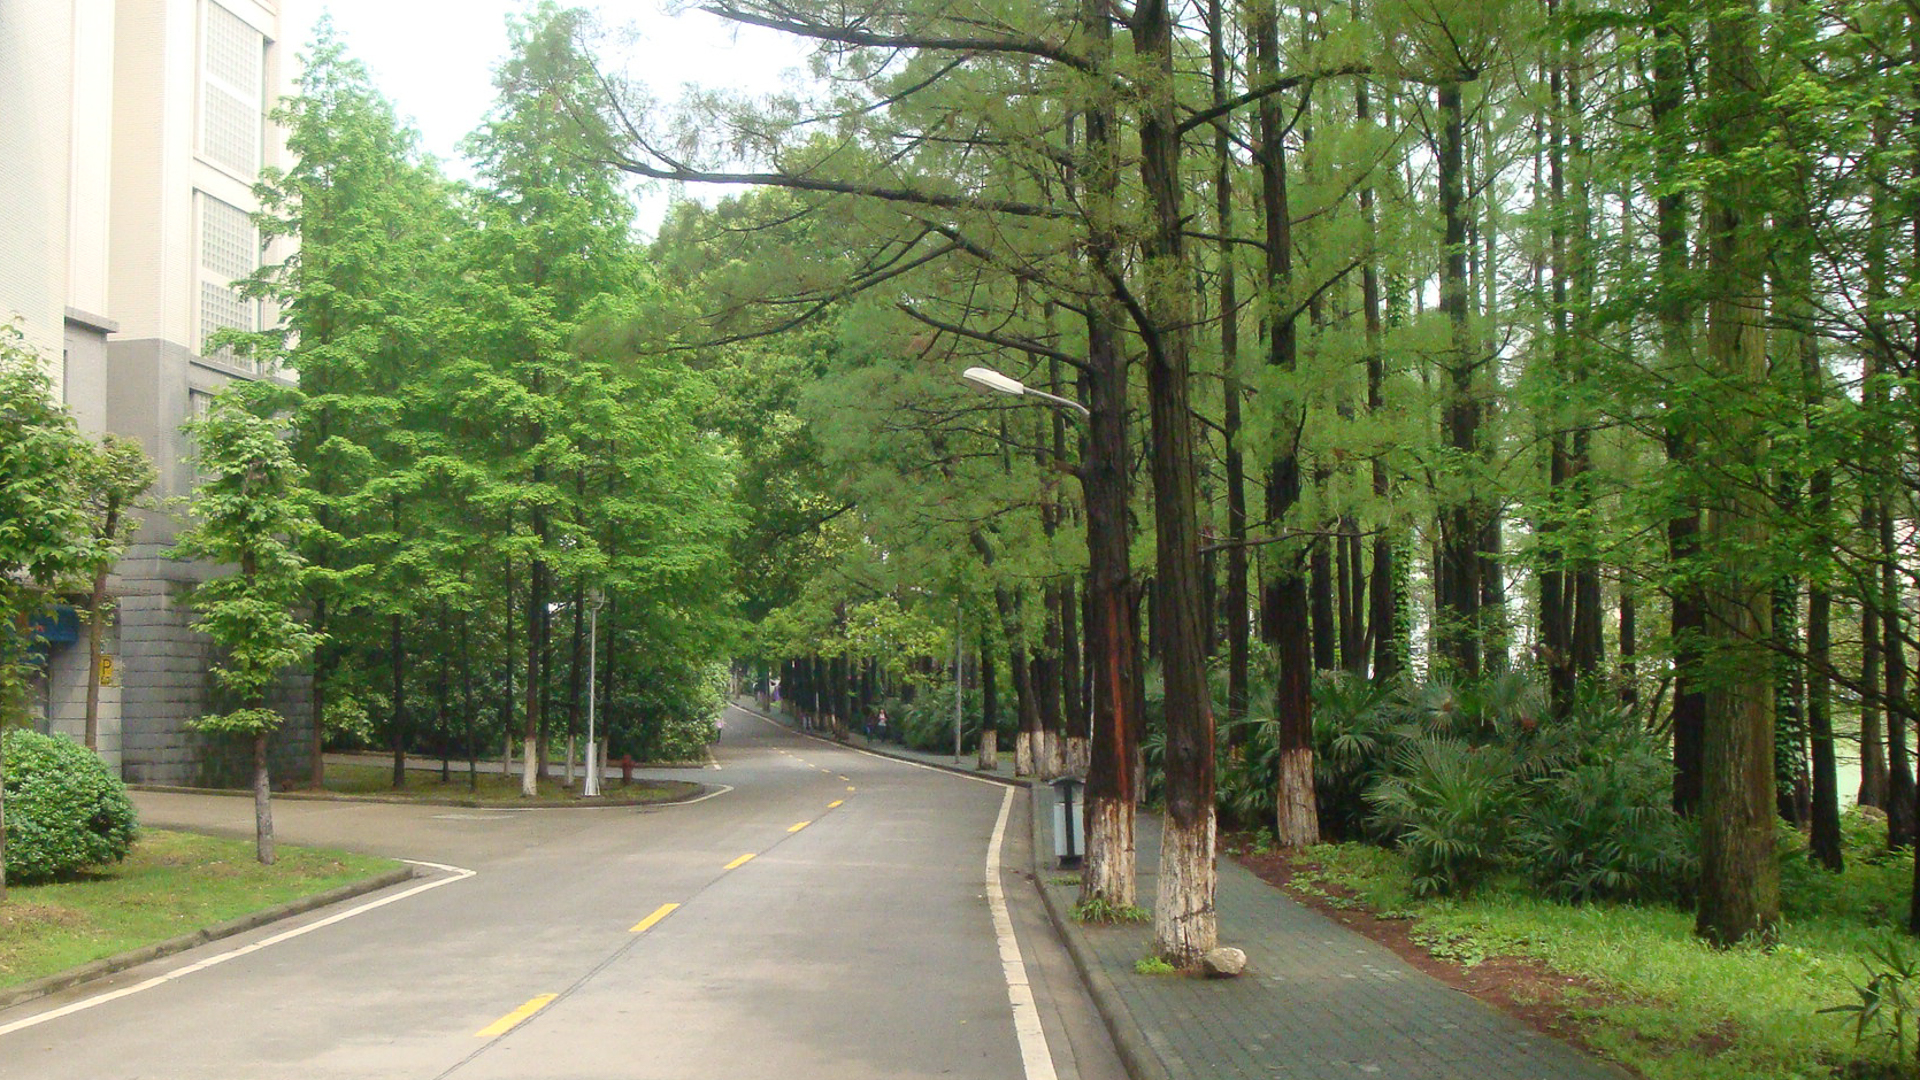 喜欢武汉大学的风景吗？你会给武汉大学打几分呢？